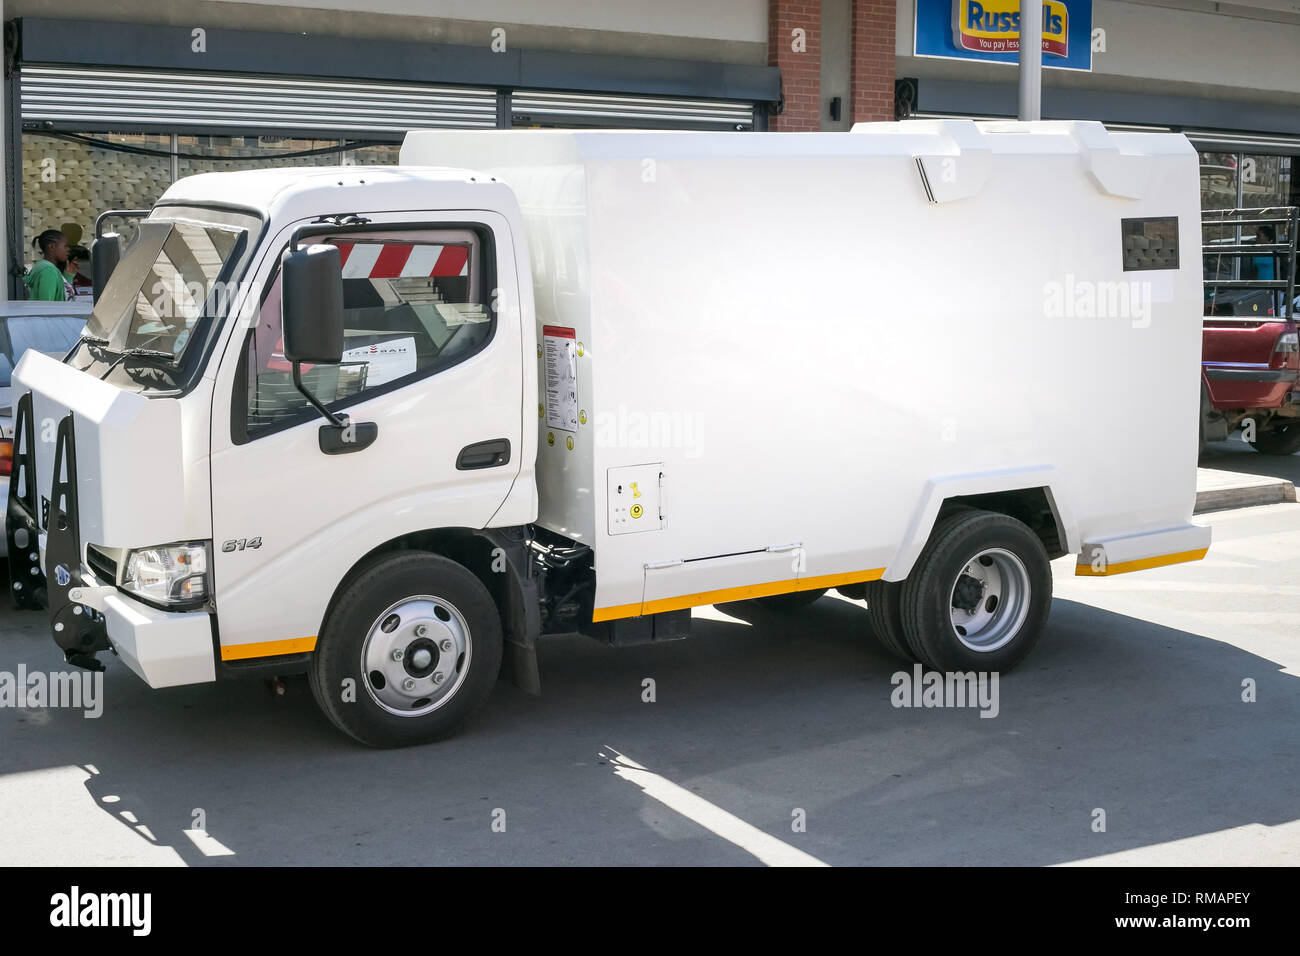 Johannesburgo, Sudáfrica, 4 de septiembre, 2018: el efectivo en tránsito van. Van de alta seguridad utilizados para el transporte de dinero en efectivo. Foto de stock